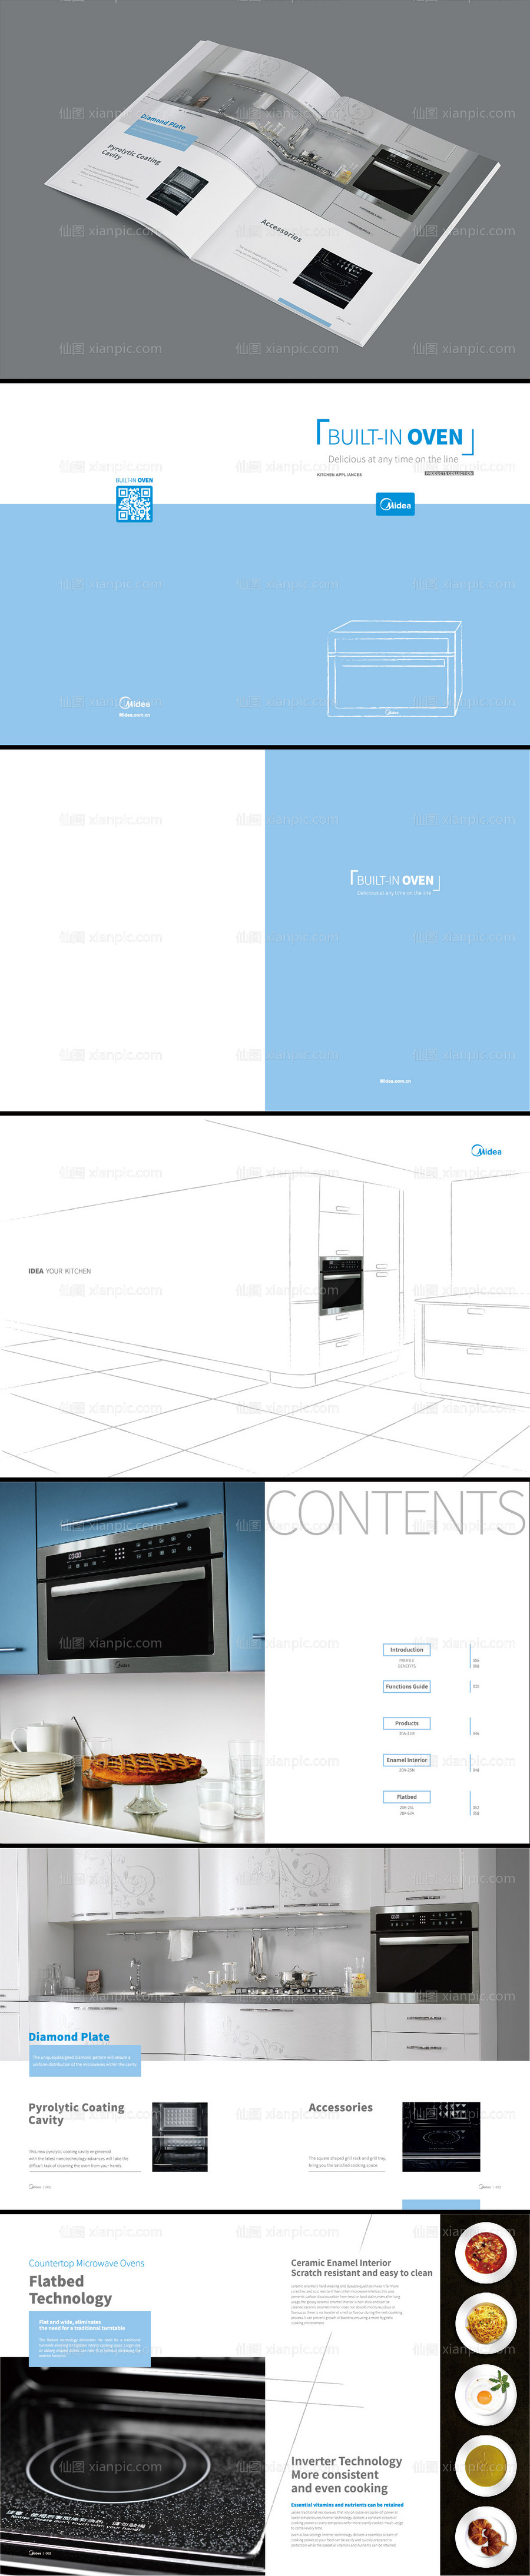 素材乐-厨房电器画册英文版